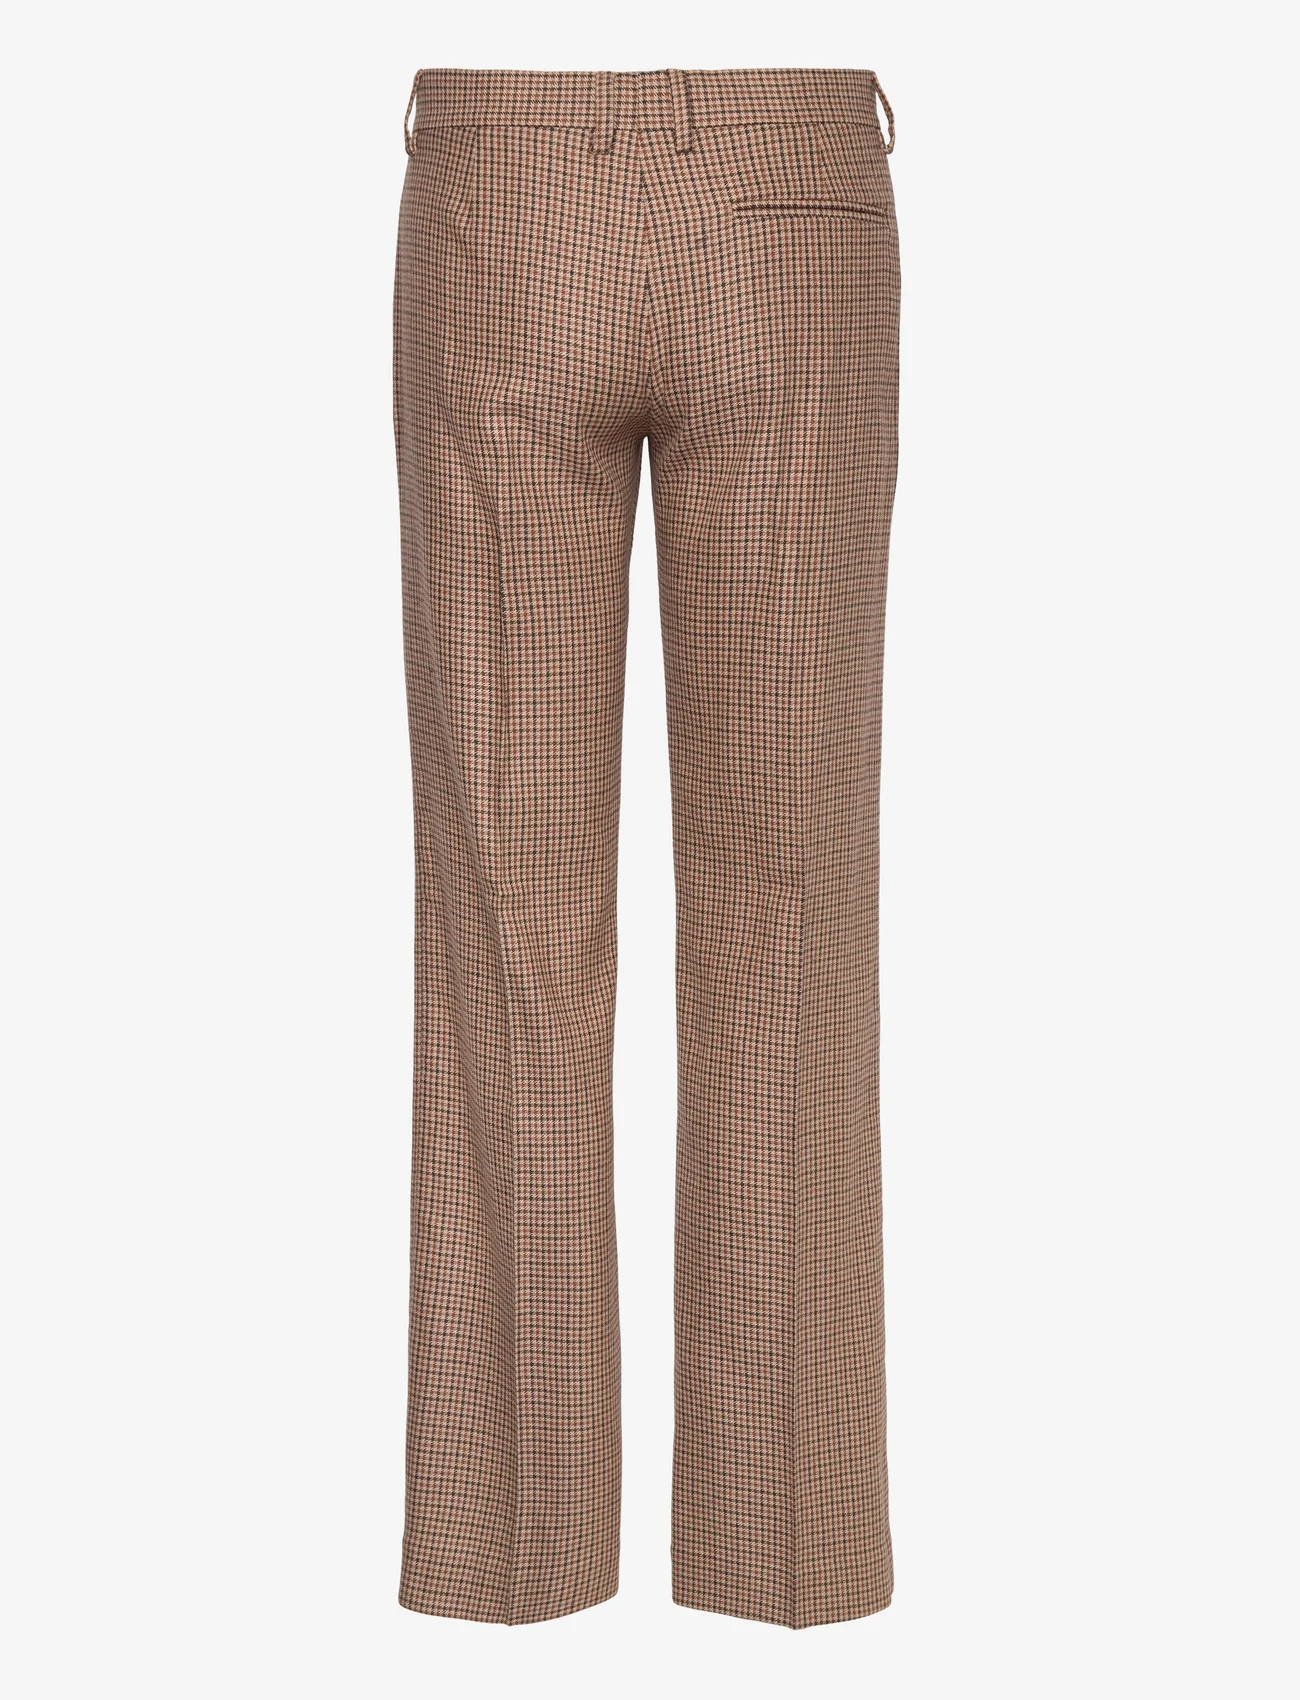 Filippa K - Bootcut Check Trousers - pidulikud püksid - sand beige - 1